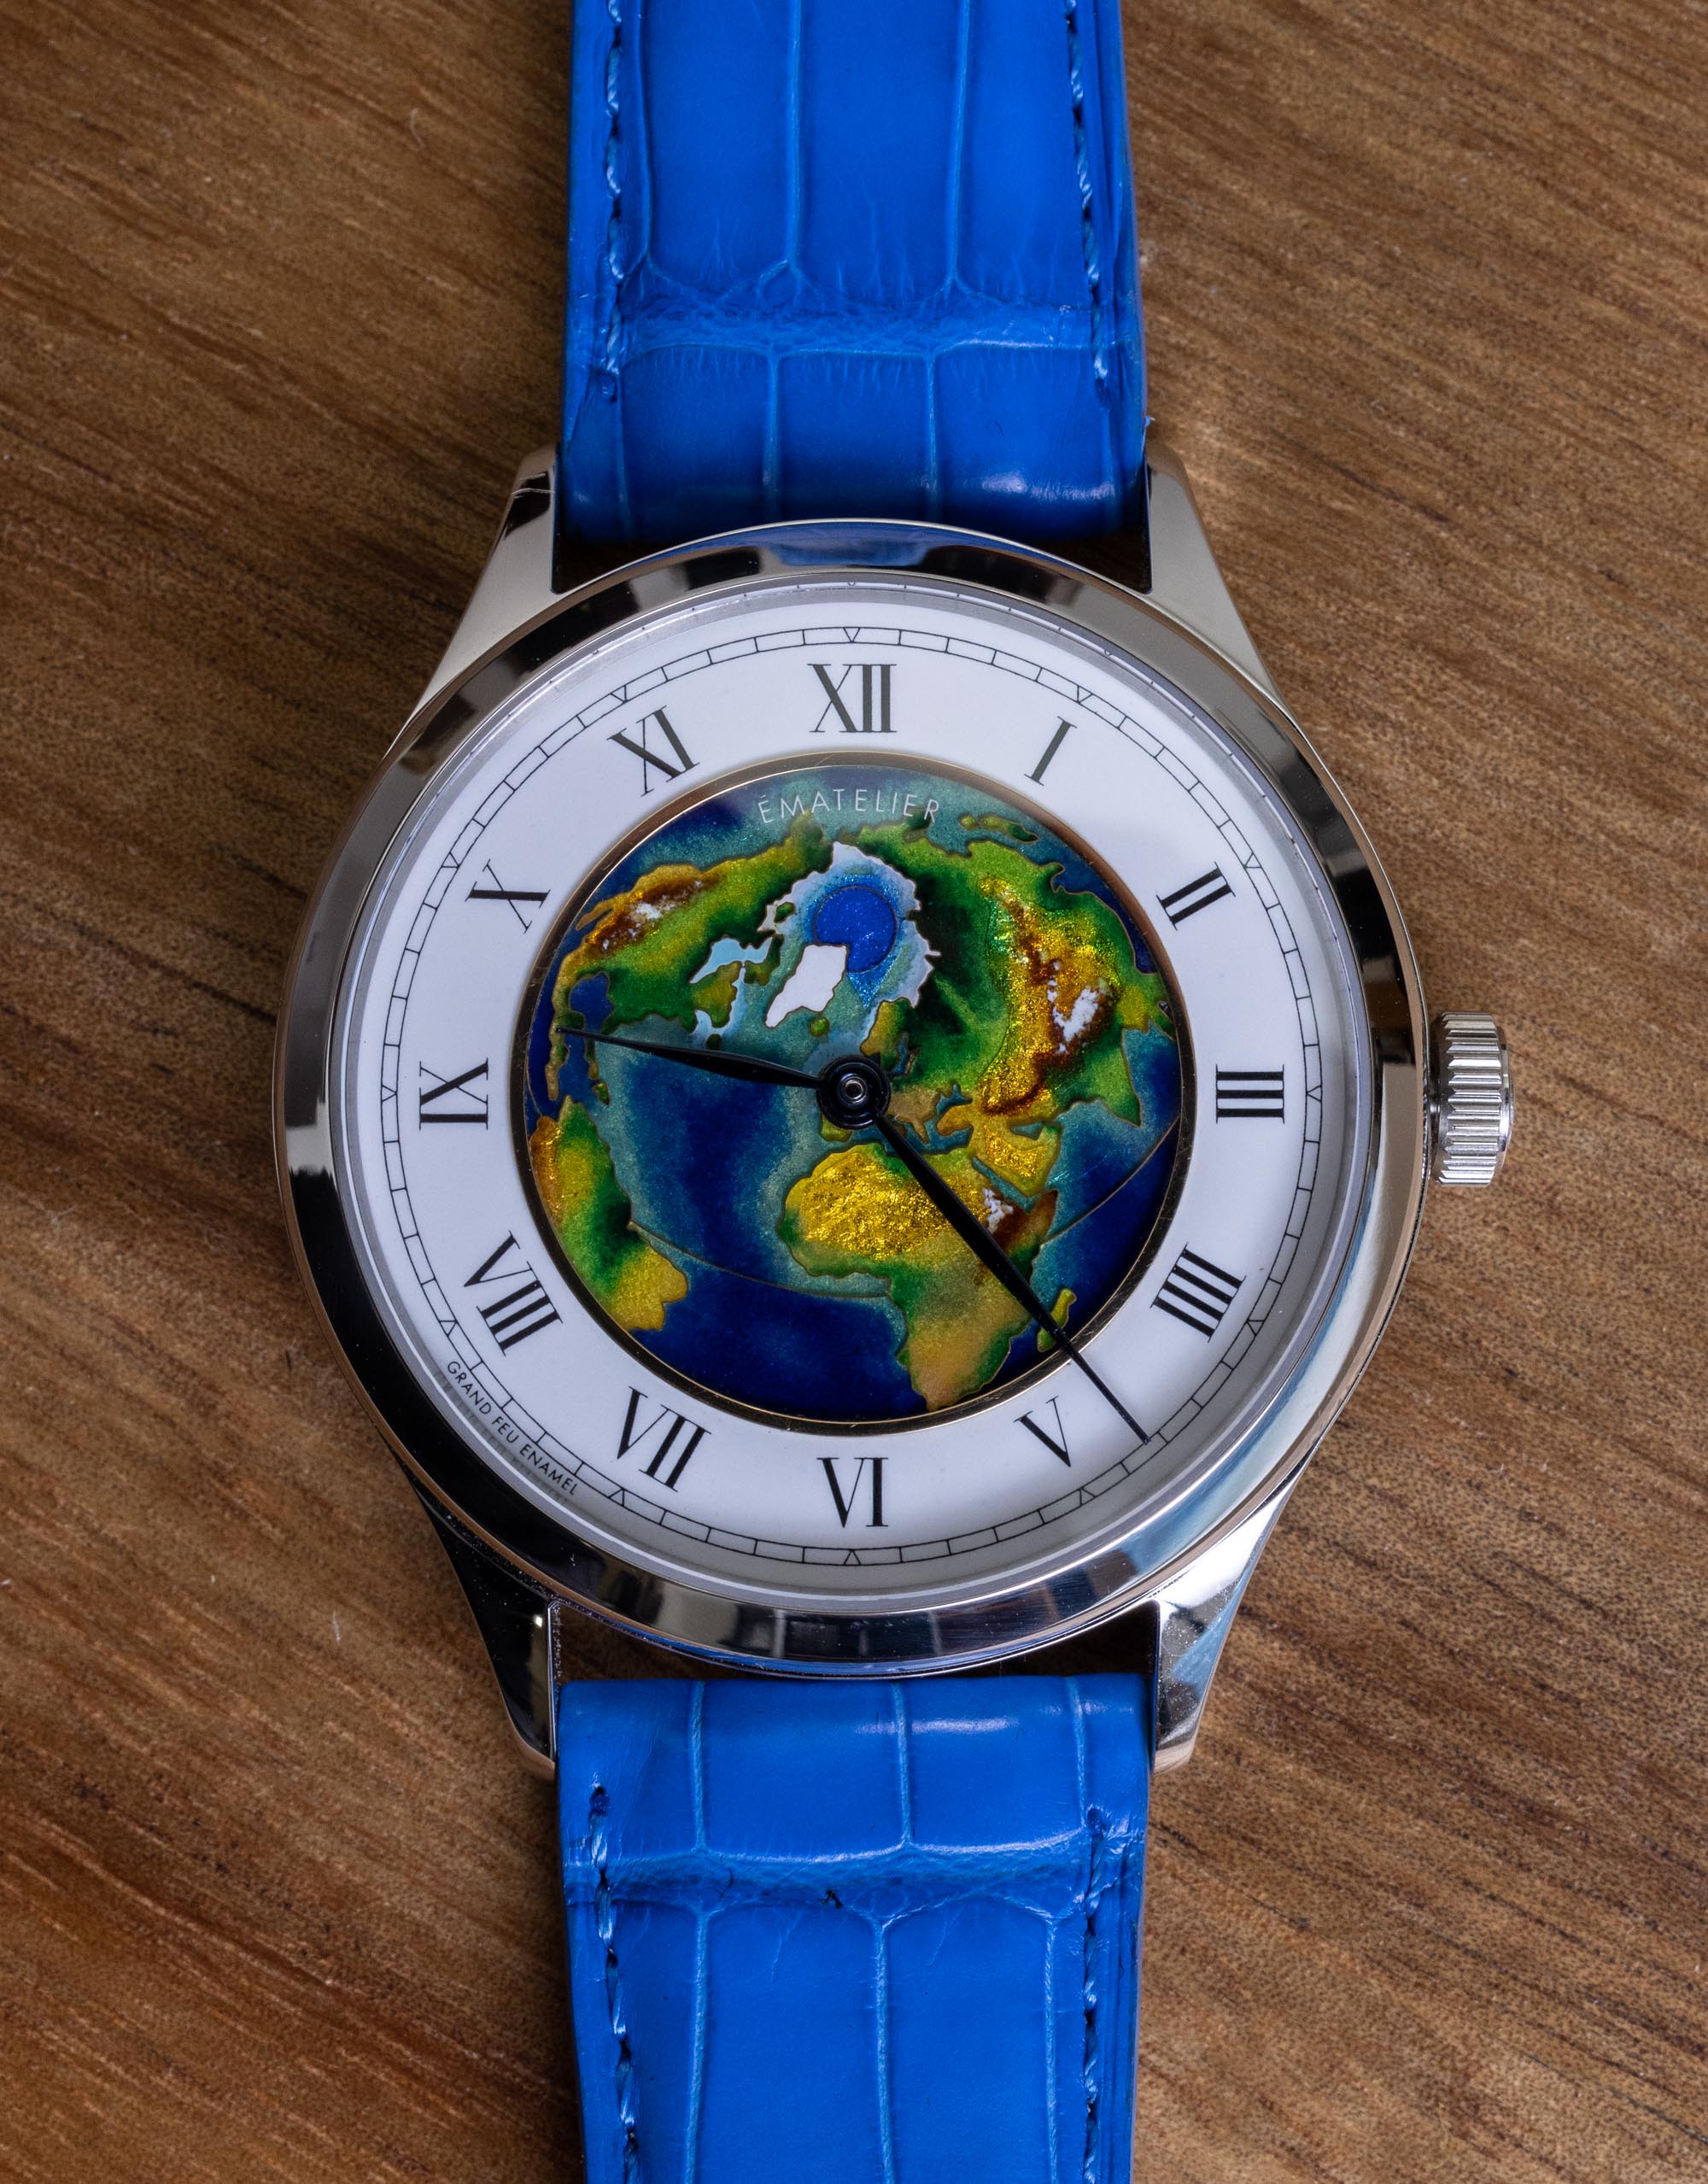 加拿大手绘表盘钟表制造商Ematelier的景泰蓝珐琅表盘手表